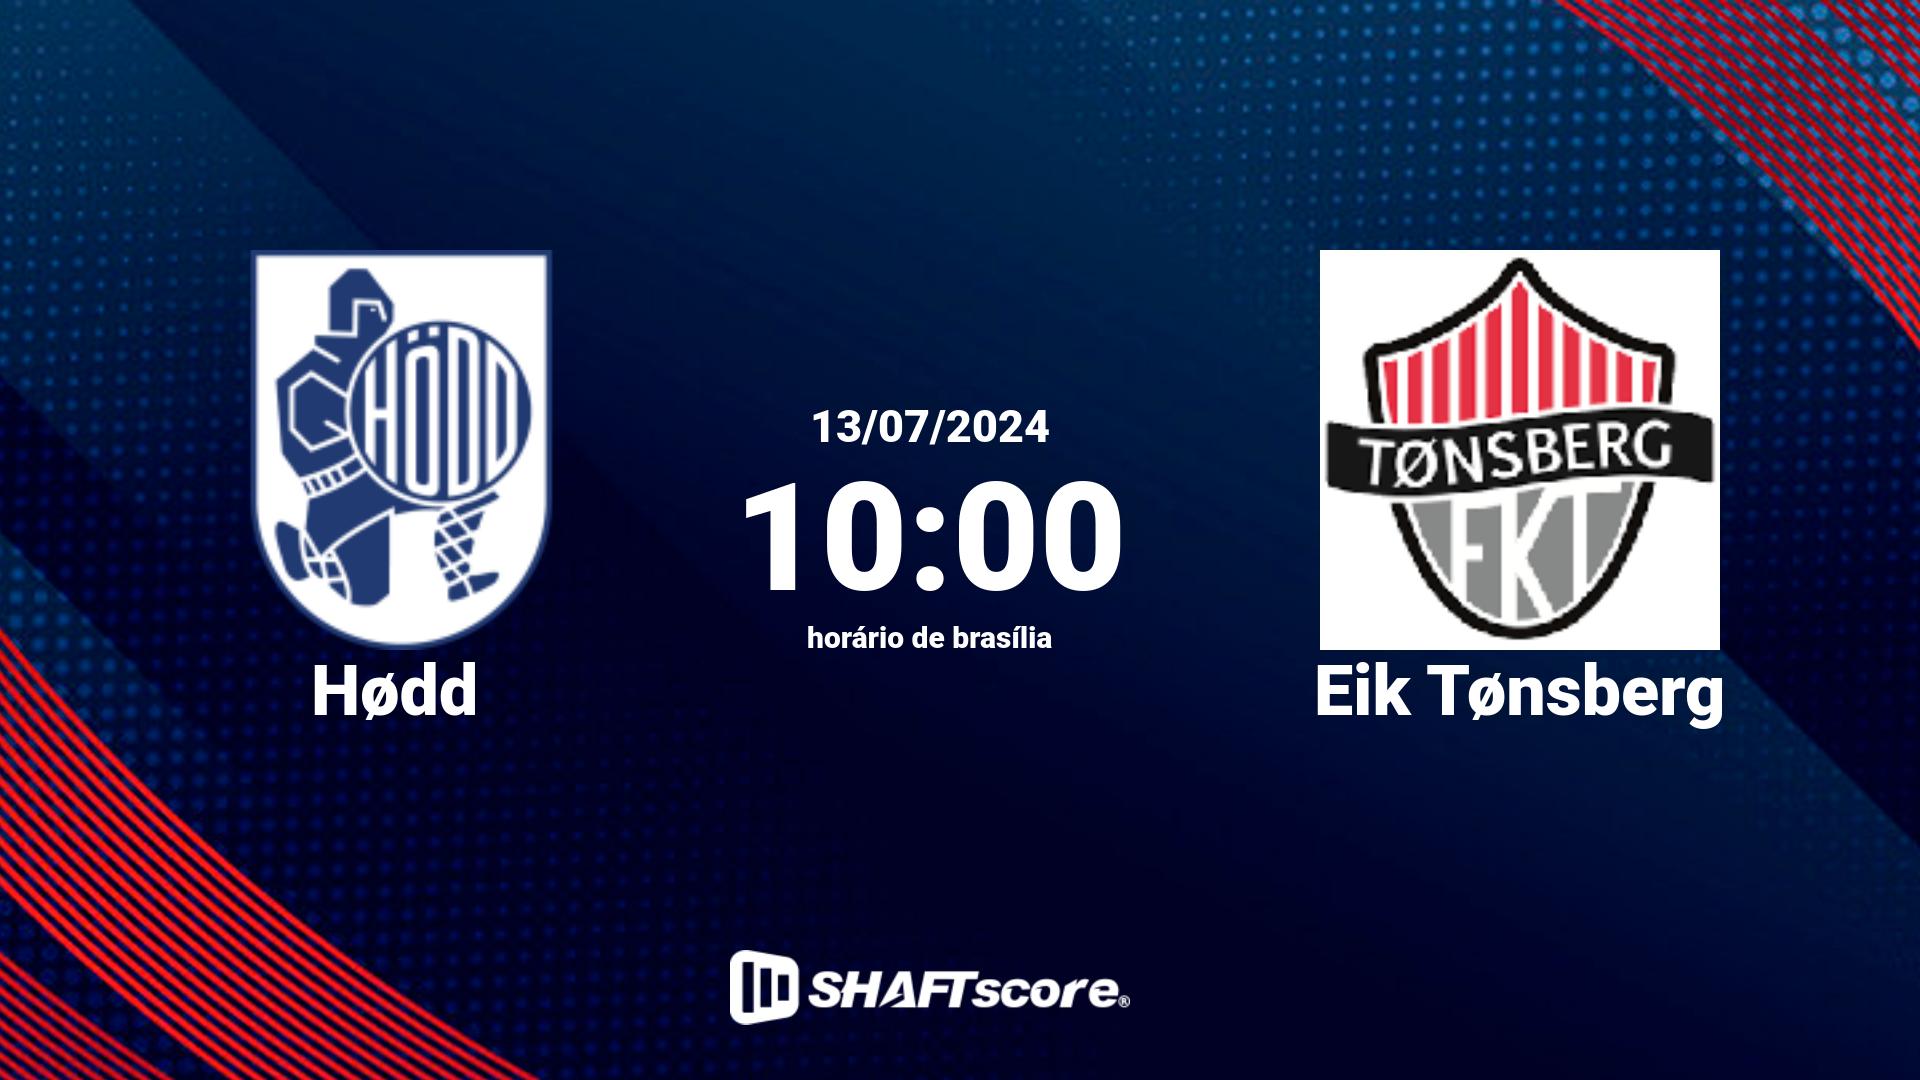 Estatísticas do jogo Hødd vs Eik Tønsberg 13.07 10:00